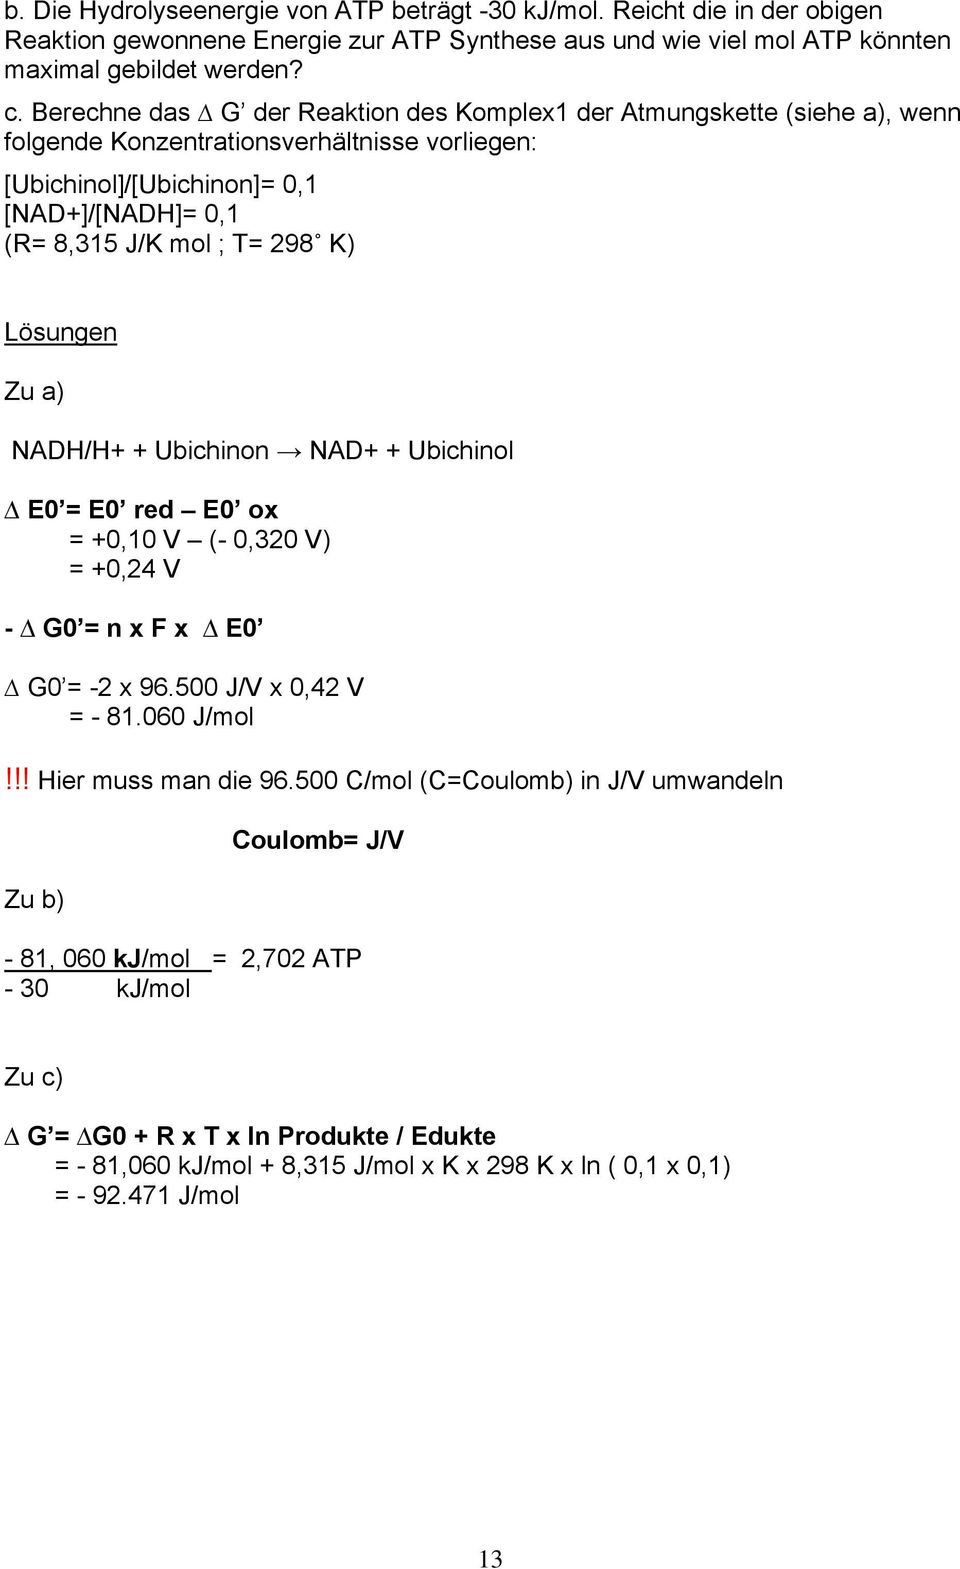 Lösungen Zu a) NADH/H+ + Ubichinon NAD+ + Ubichinol E0 = E0 red E0 ox = +0,10 V (- 0,320 V) = +0,24 V - G0 = n x F x E0 G0 = -2 x 96.500 J/V x 0,42 V = - 81.060 J/mol!!! Hier muss man die 96.